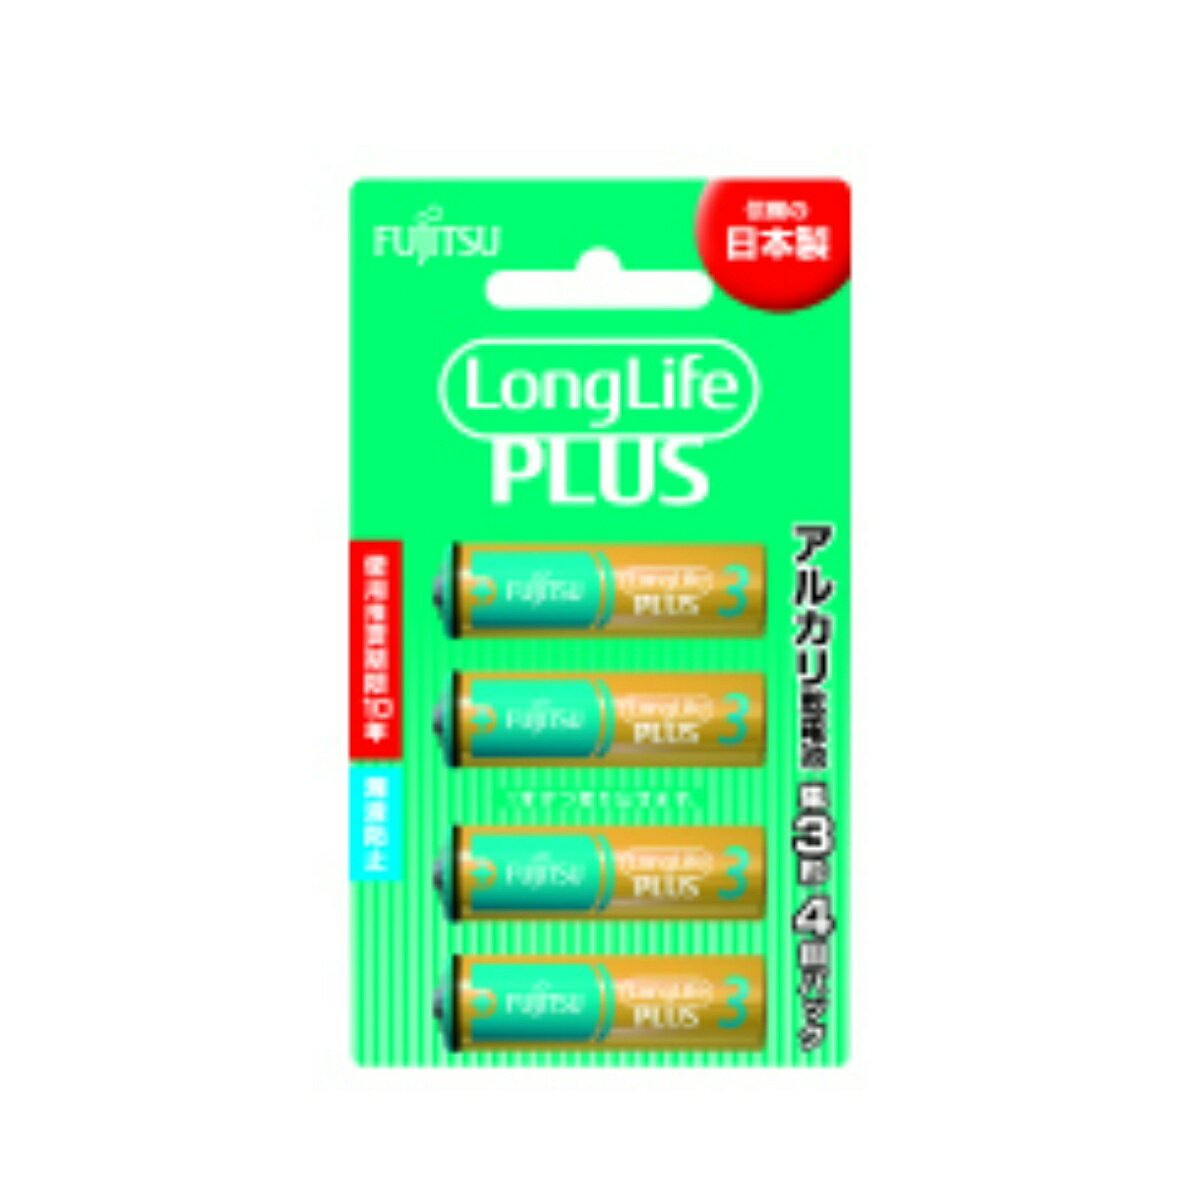 【送料込・まとめ買い×8個セット】FDK FUJITSU Long LifePLUS ロング ライフプラス アルカリ乾電池 LR6LP(4B) 単3形 4個パック